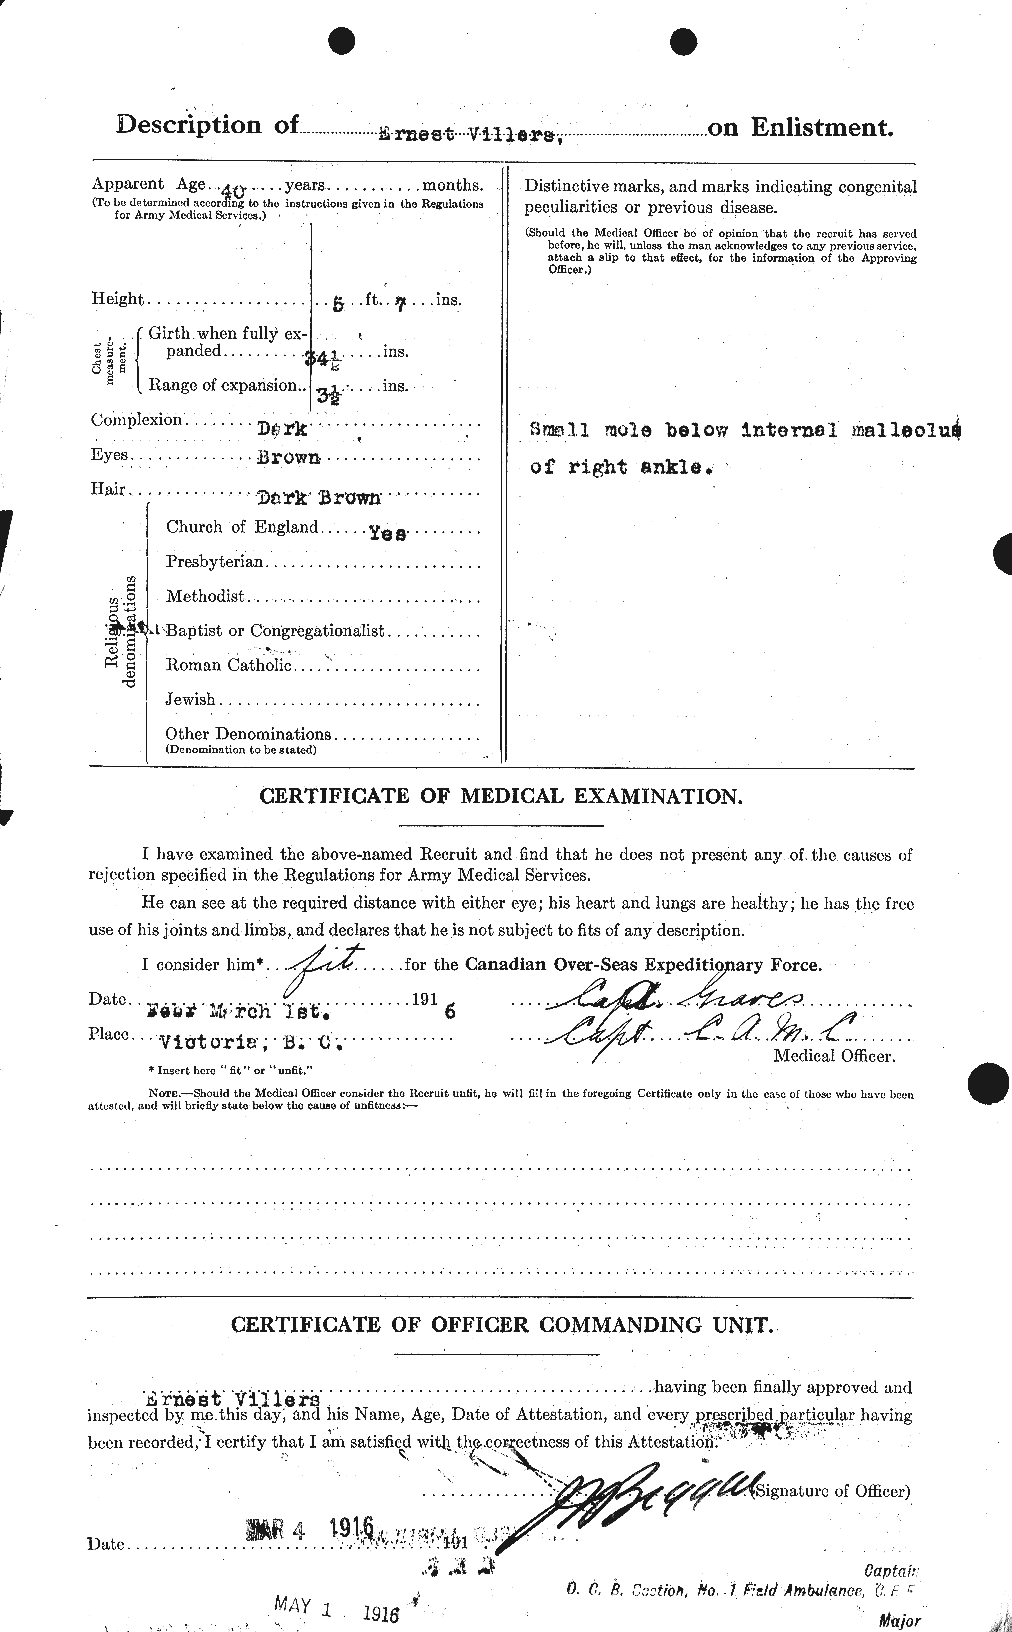 Dossiers du Personnel de la Première Guerre mondiale - CEC 653894b